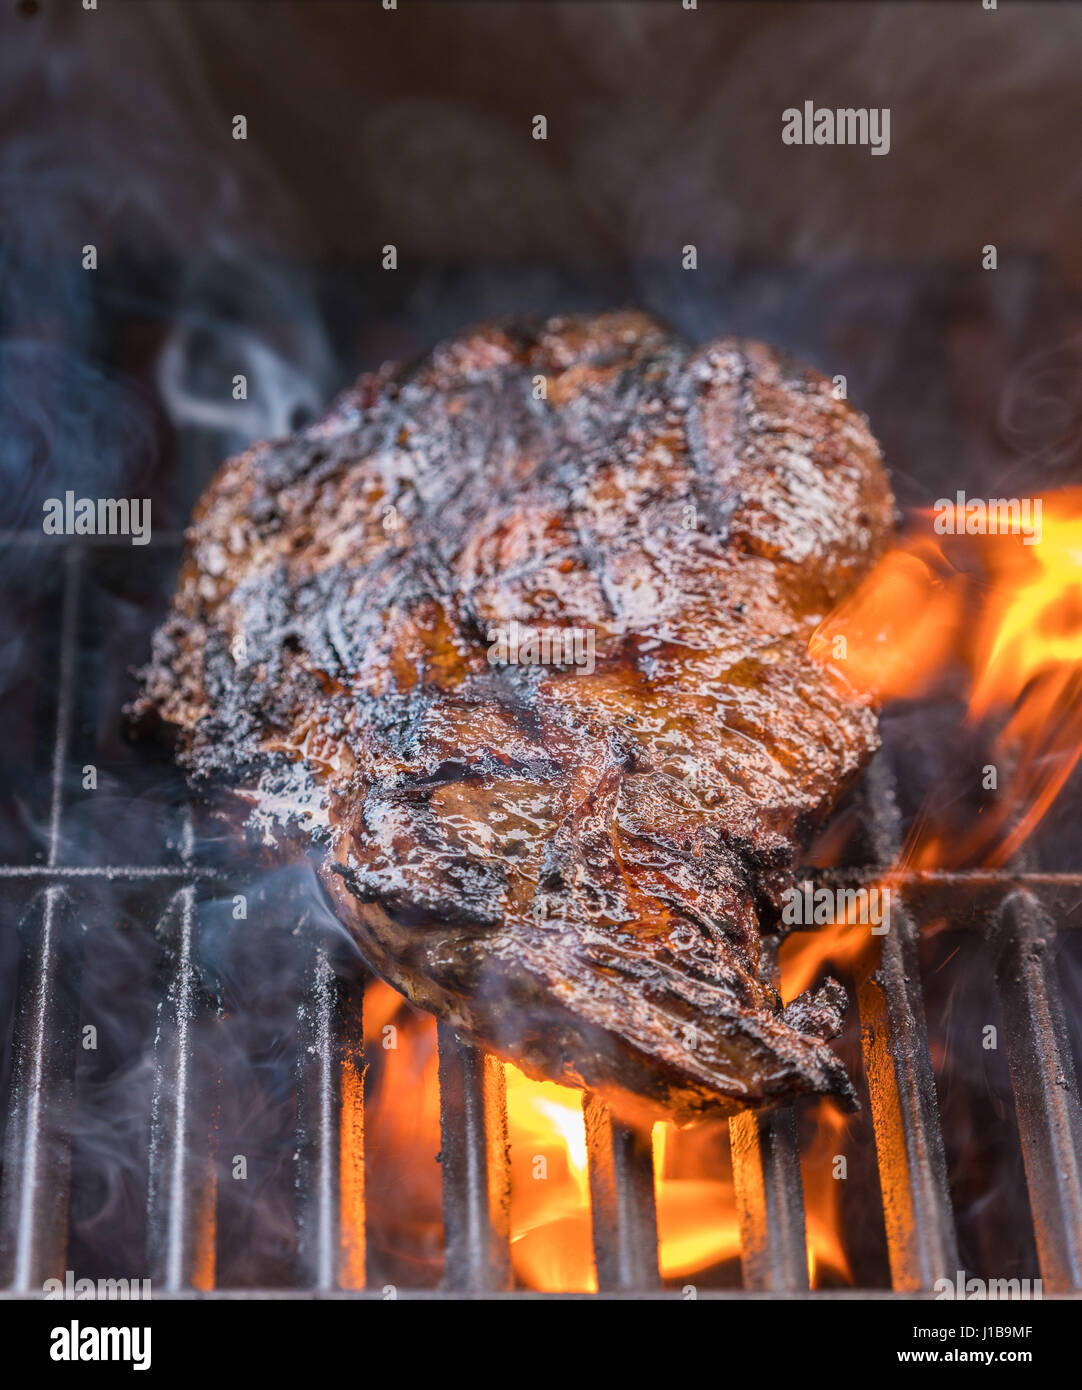 Près d'un barbecue - grand morceau de steak de boeuf à la flamme, la cuisson des viandes à l'extérieur sur un barbecue Banque D'Images